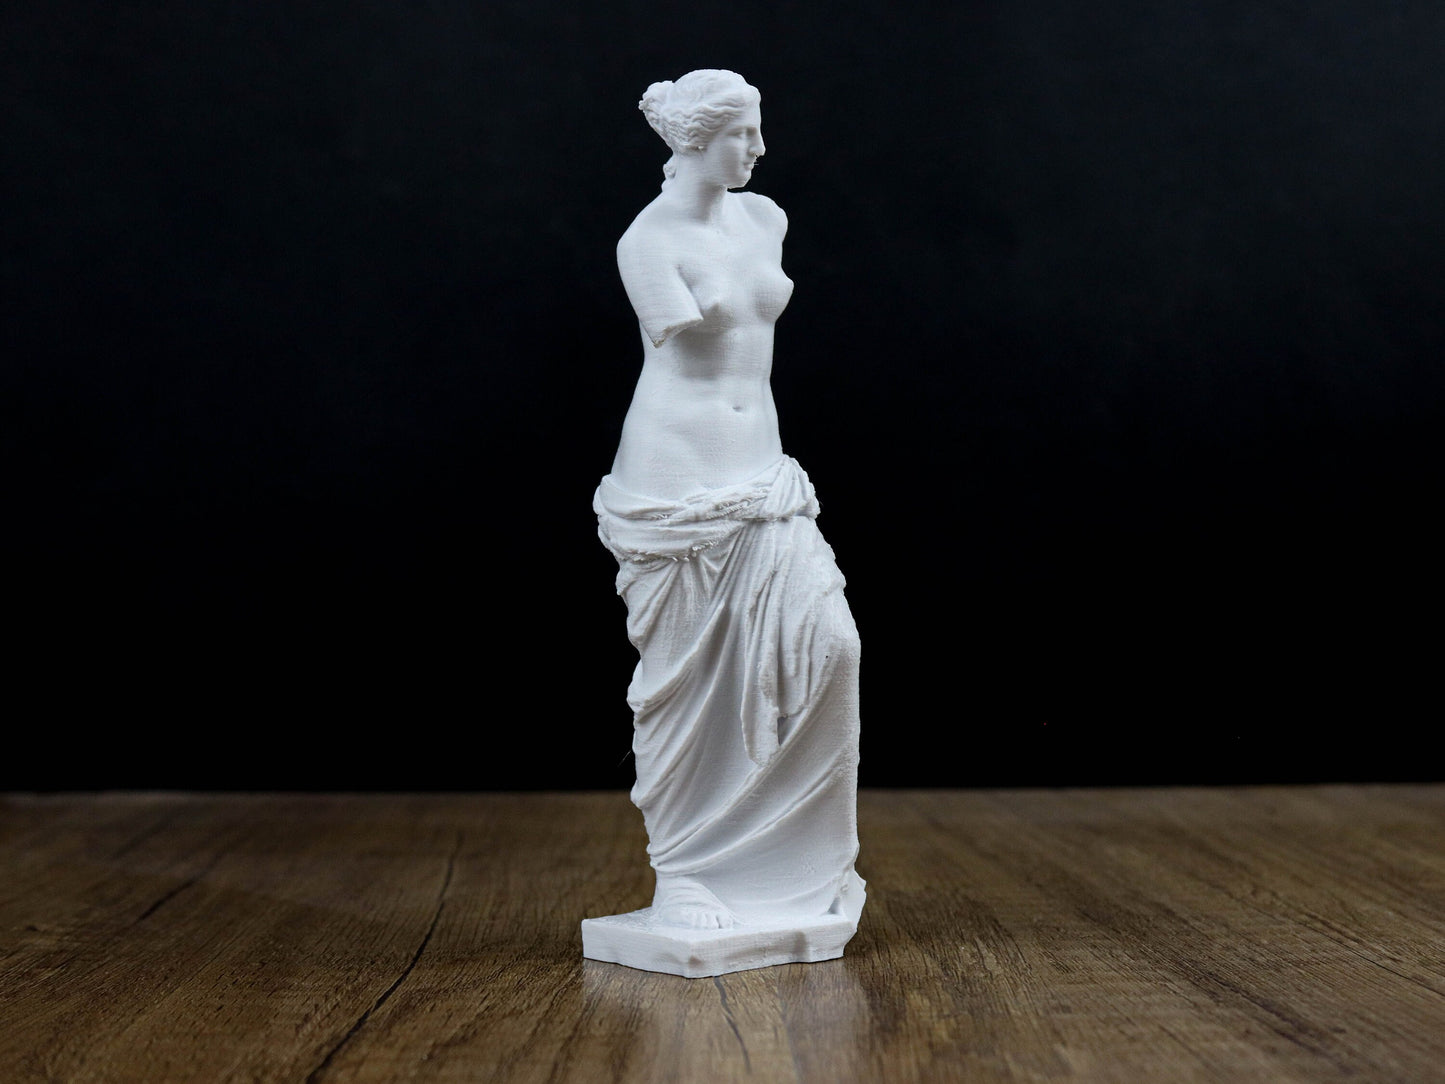 Venus De Milo Statue, Ancient Greek Sculpture showing Aphrodite the Greek Goddess of Love